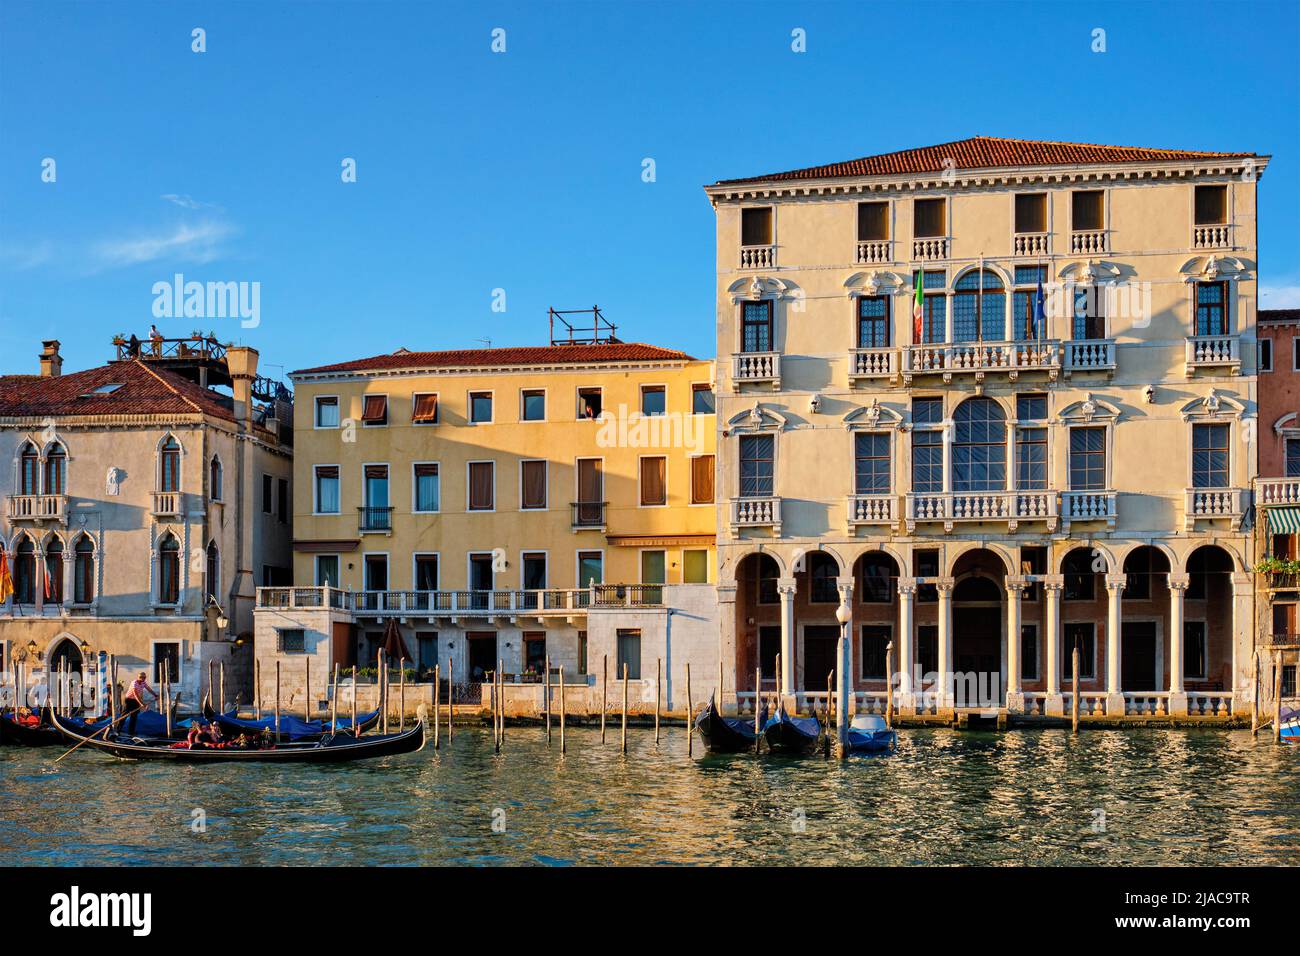 Gran Canal con barcos y góndolas al atardecer, Venecia, Italia Foto de stock